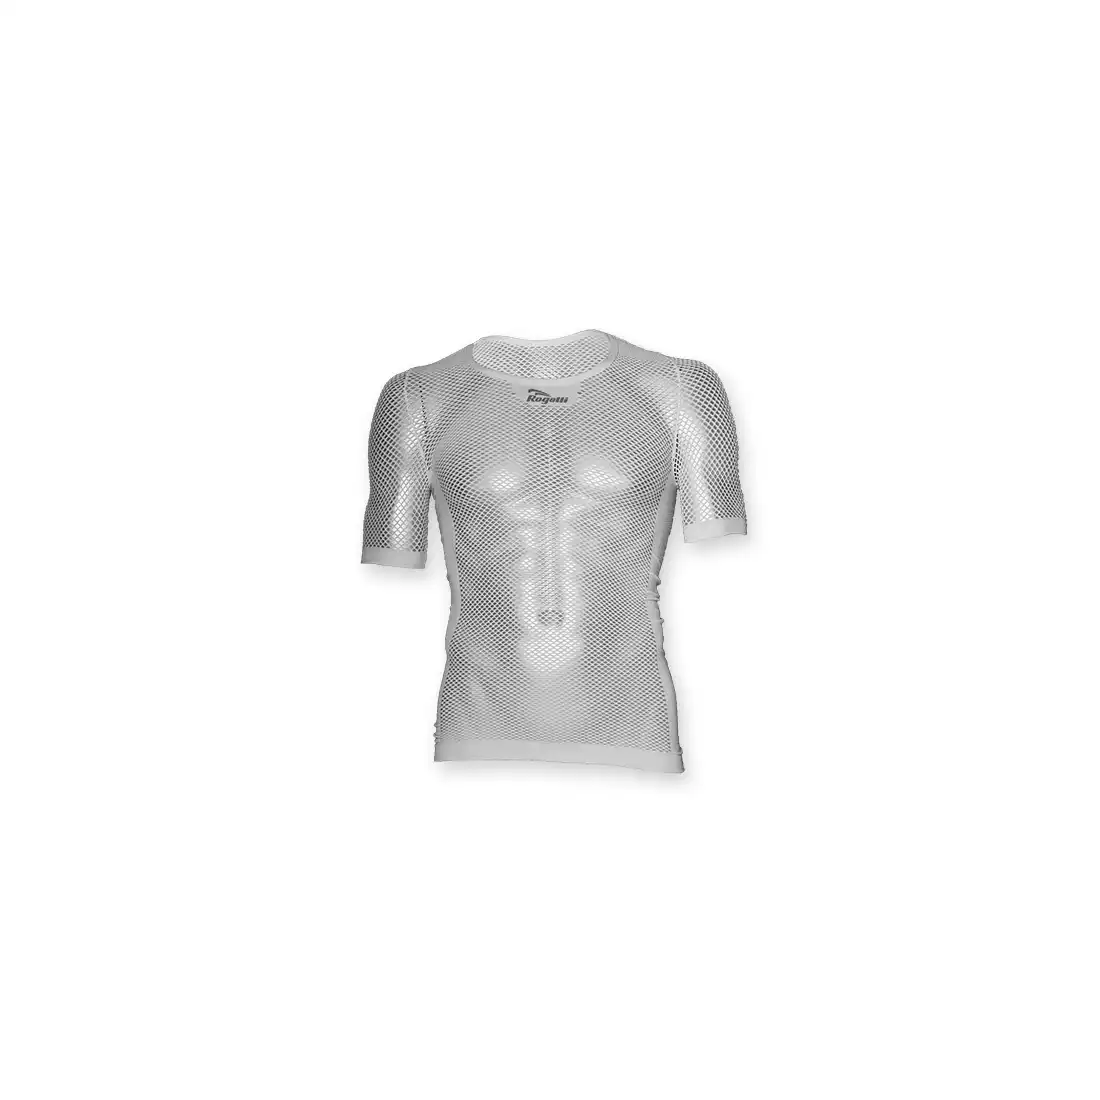 ROGELLI AIR - bielizna termoaktywna - koszulka z krótkim rękawem - kolor: Biały